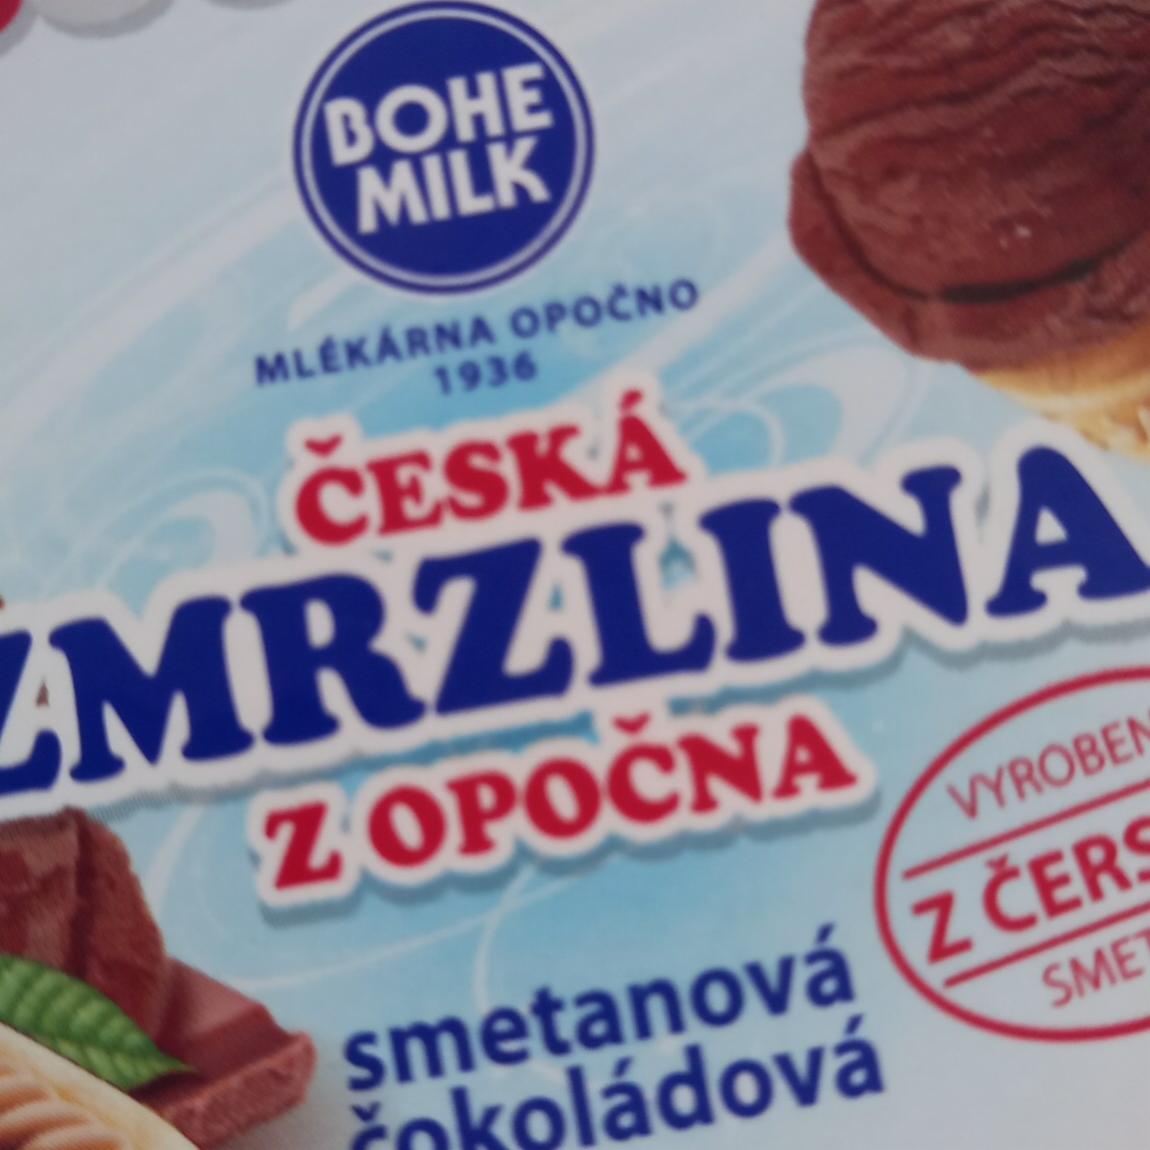 Fotografie - Česká zmrzlina z Opočna smetanová čokoládová Bohemilk